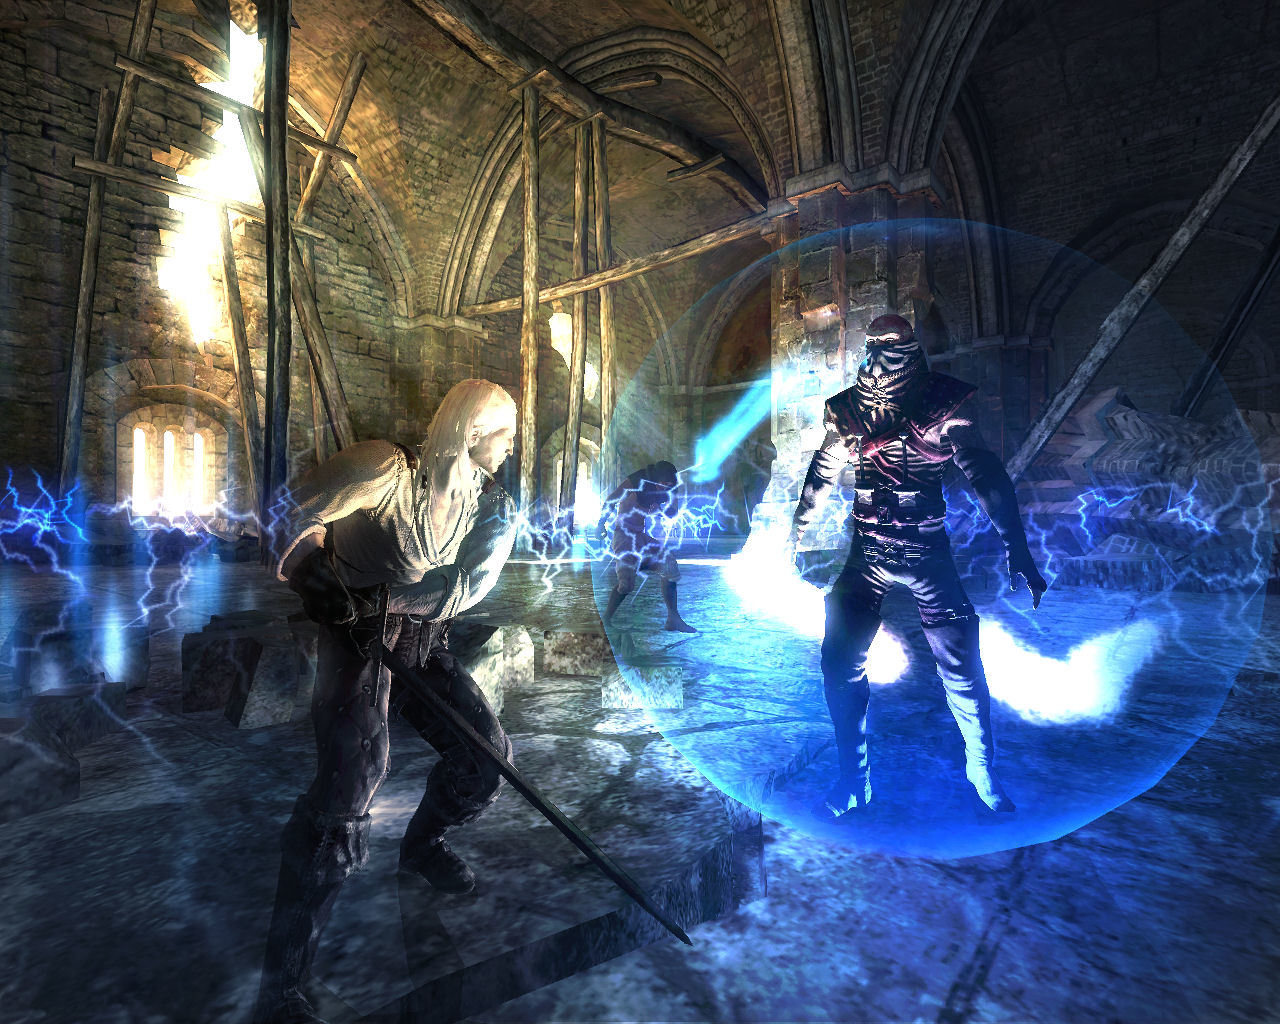 Geralt tiene dos espadas: una para criaturas sobrenaturales y otra para humanos y criaturas de carne y hueso.